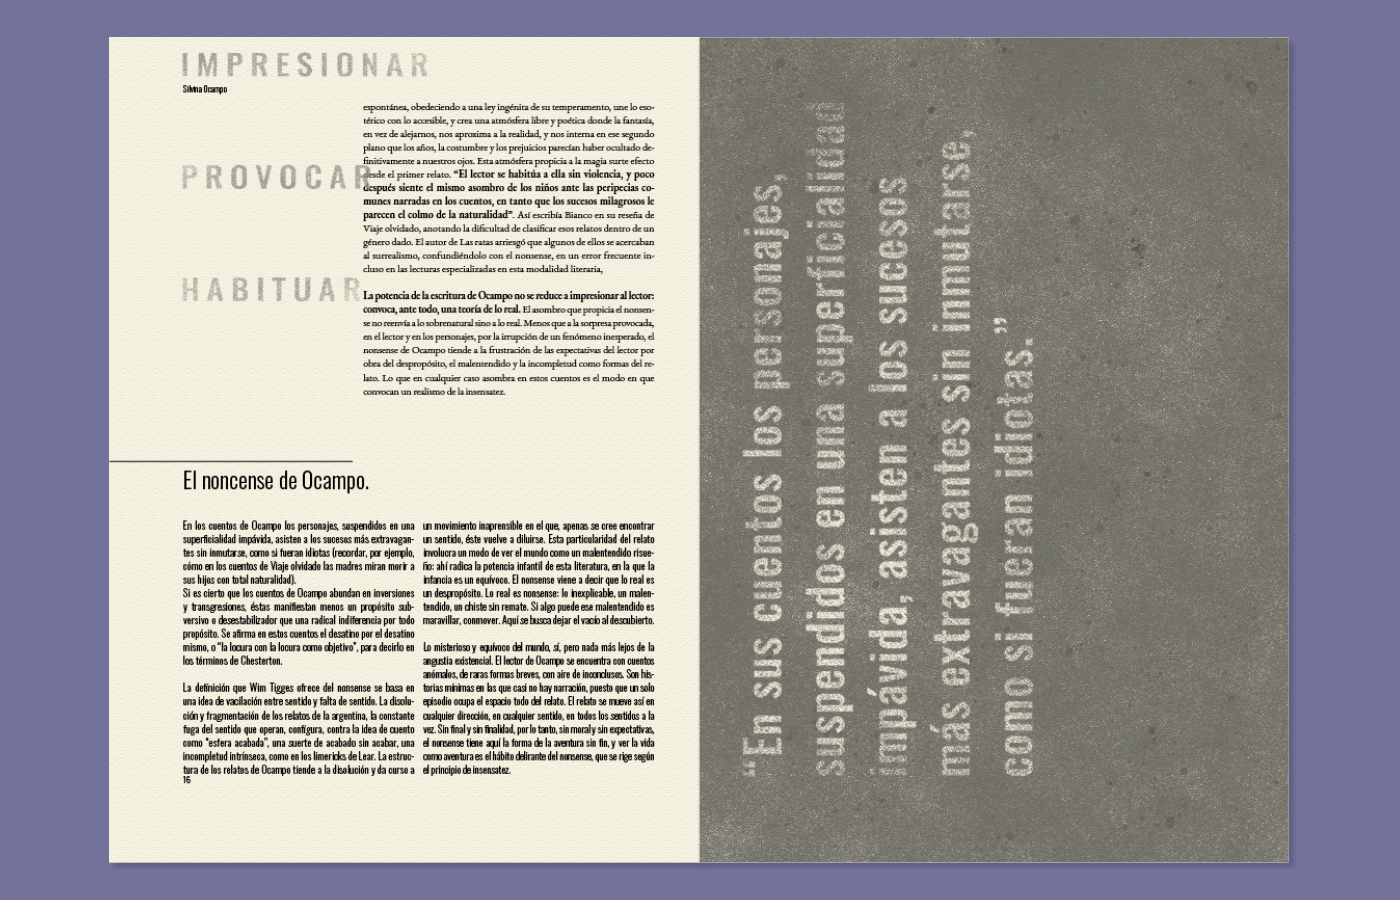 cátedra XG Diseño editorial diseño gráfico editorial fadu fadu uba libro Silvina ocampo tipografia uba